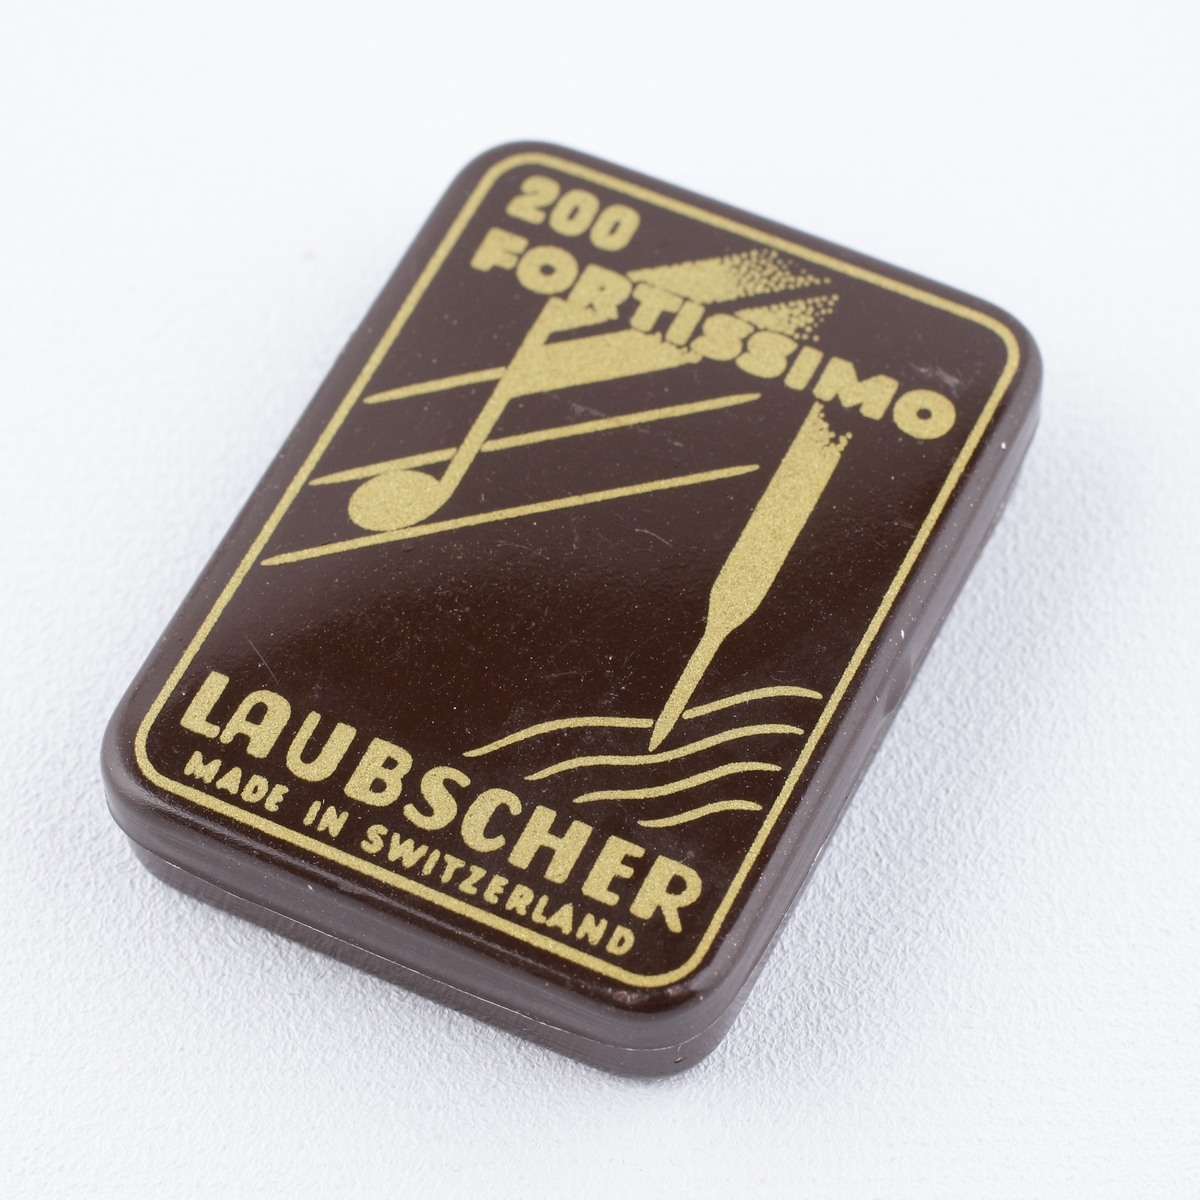 Ask av plåt.
Rektangulär modell med avrundade hörn. Lock med dekor i brunt och gulvitt. Text på locket: "200 Fortissimo, Laubscher, 
Made in Switzerland". 
Förvaringsask för grammofonnålar.